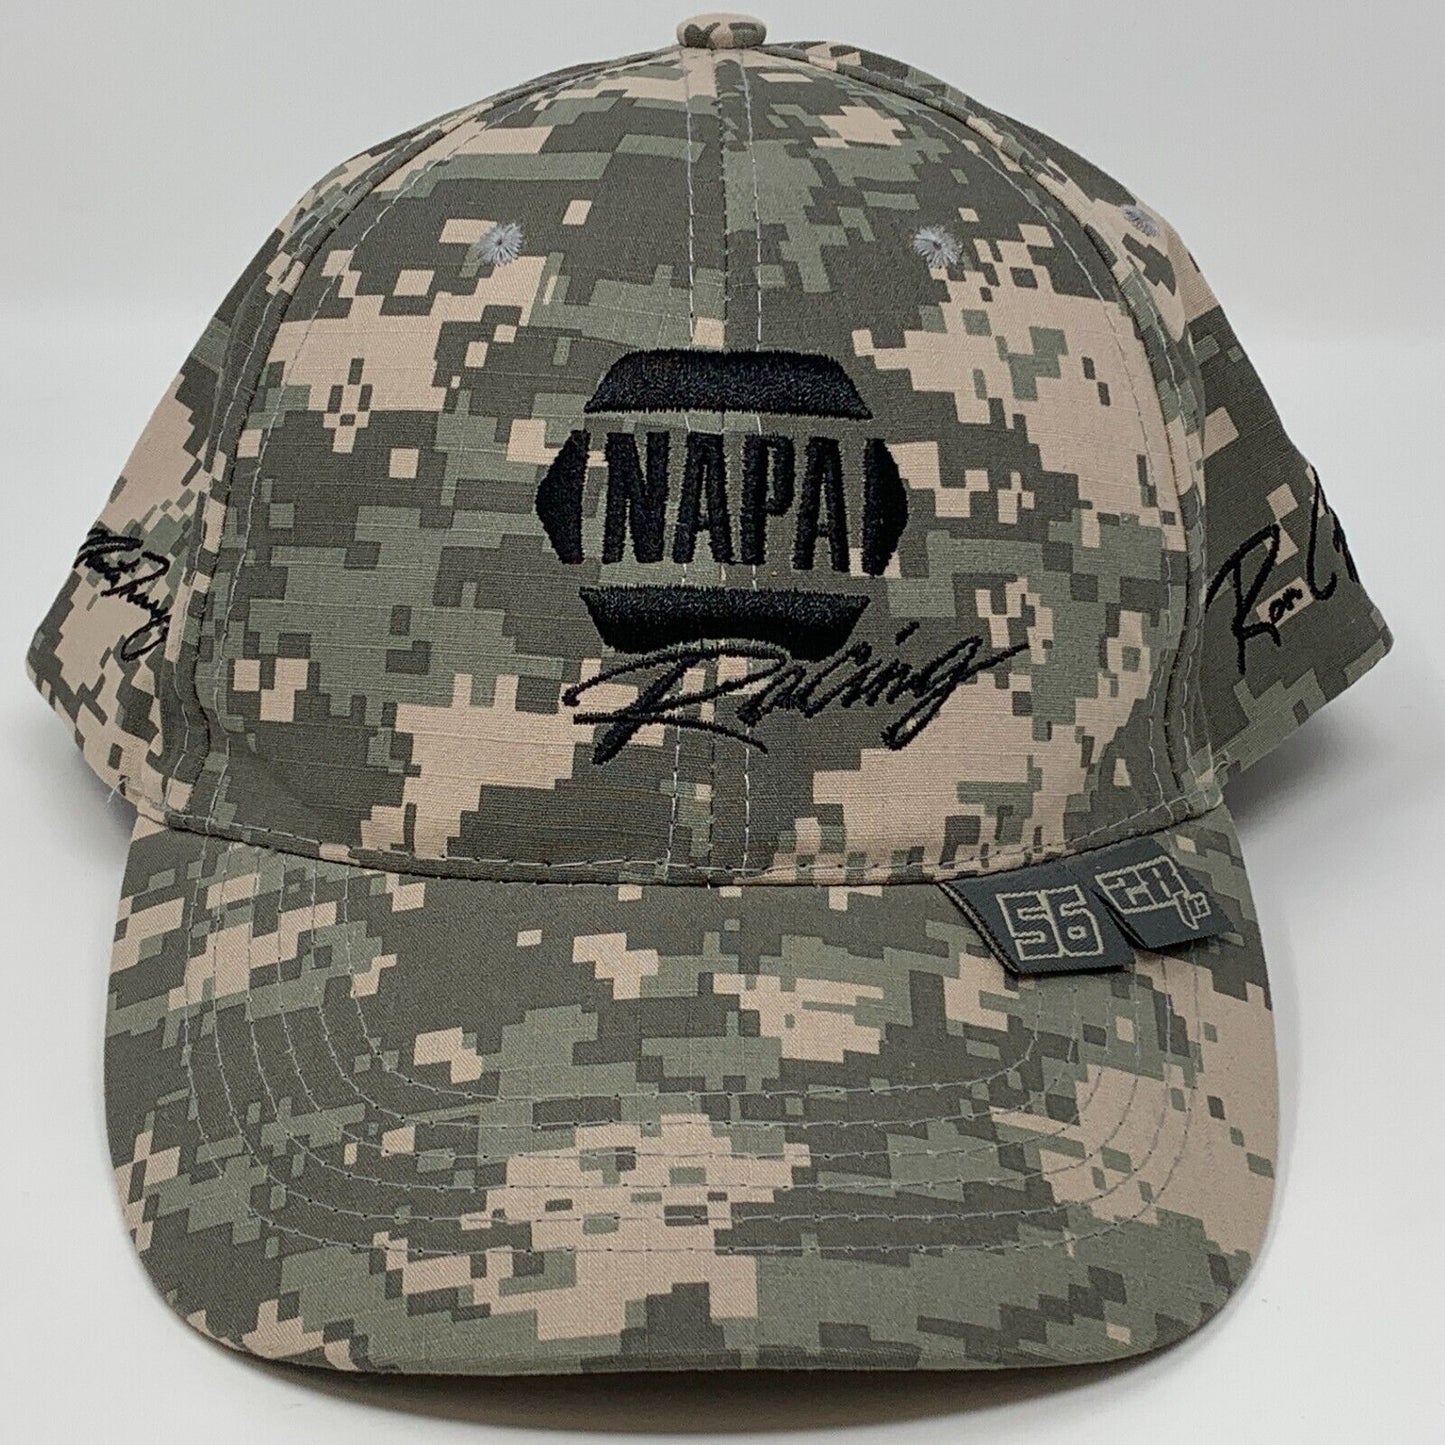 NAPA Racing Camouflage Strapback Hat NASCAR NHRA Motorsports Racing Baseball Cap